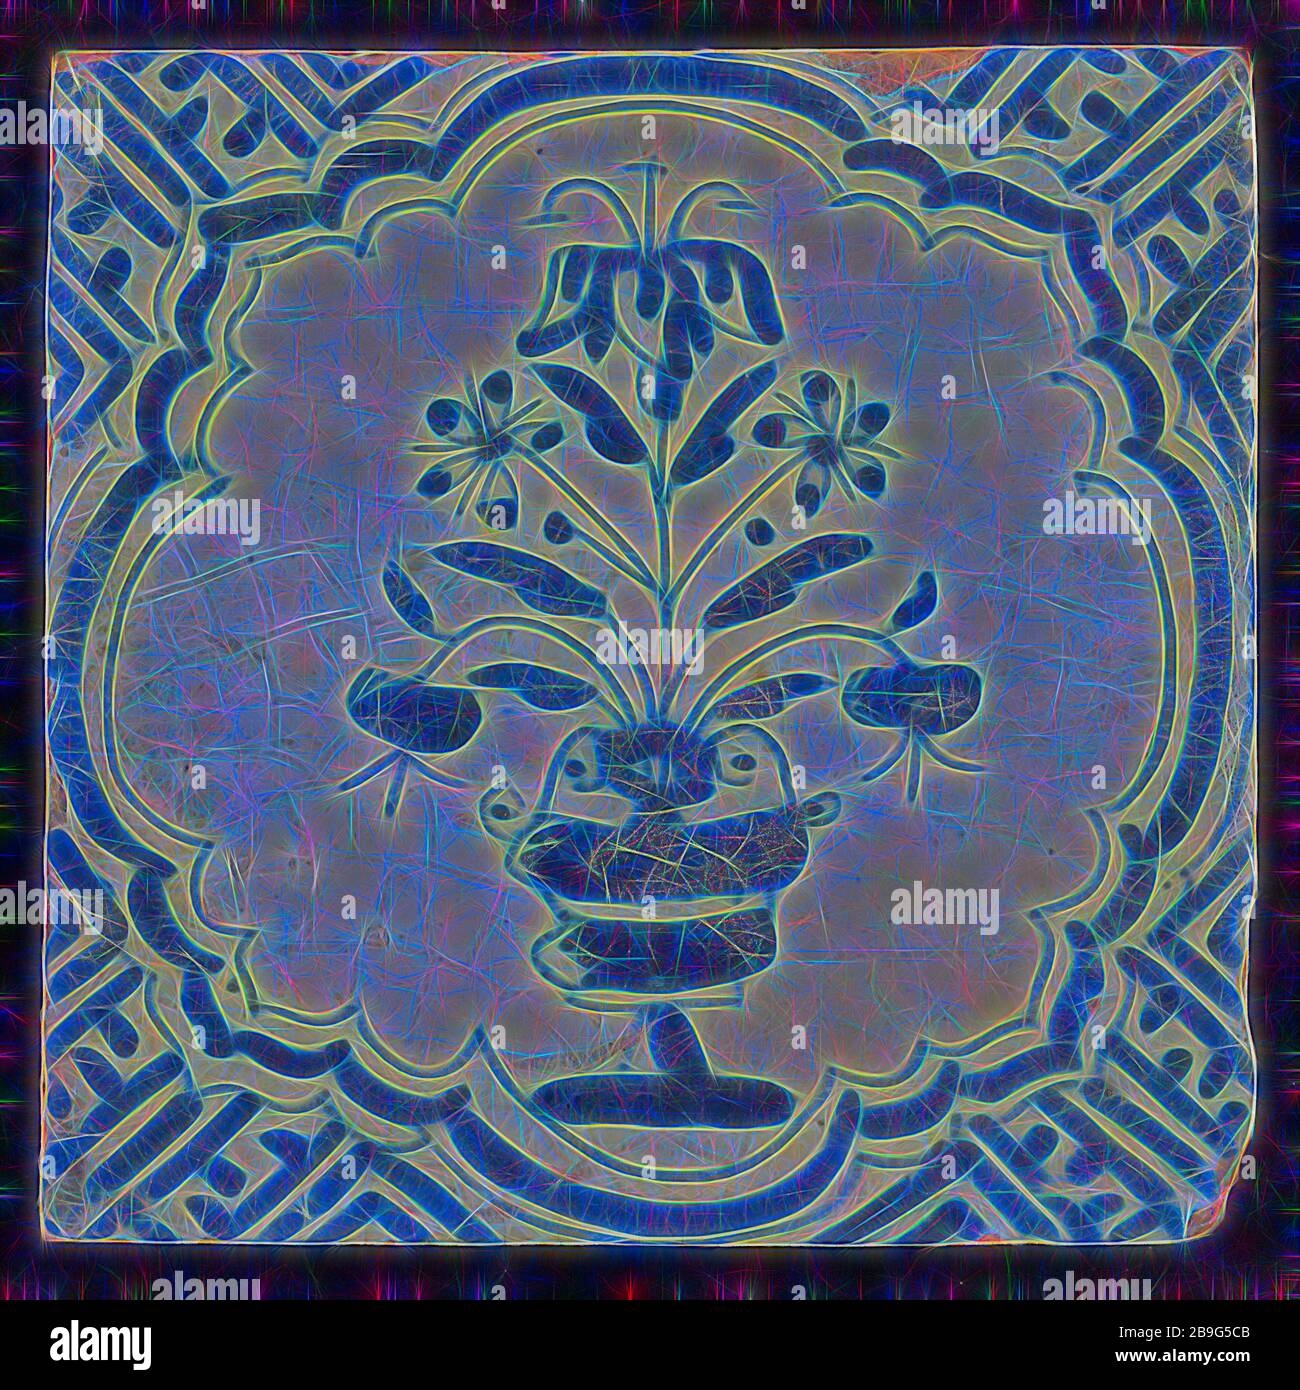 Kachel mit blauem Topf mit Blumen in flechtenförmigem Rahmen; Eckenmuster Mäander, Wandfliesenplastik Keramik Steingutglasur, gebacken 2x glasiert lackiert Roter Schard Quadrat drei und vier Nagellöcher Stockfoto